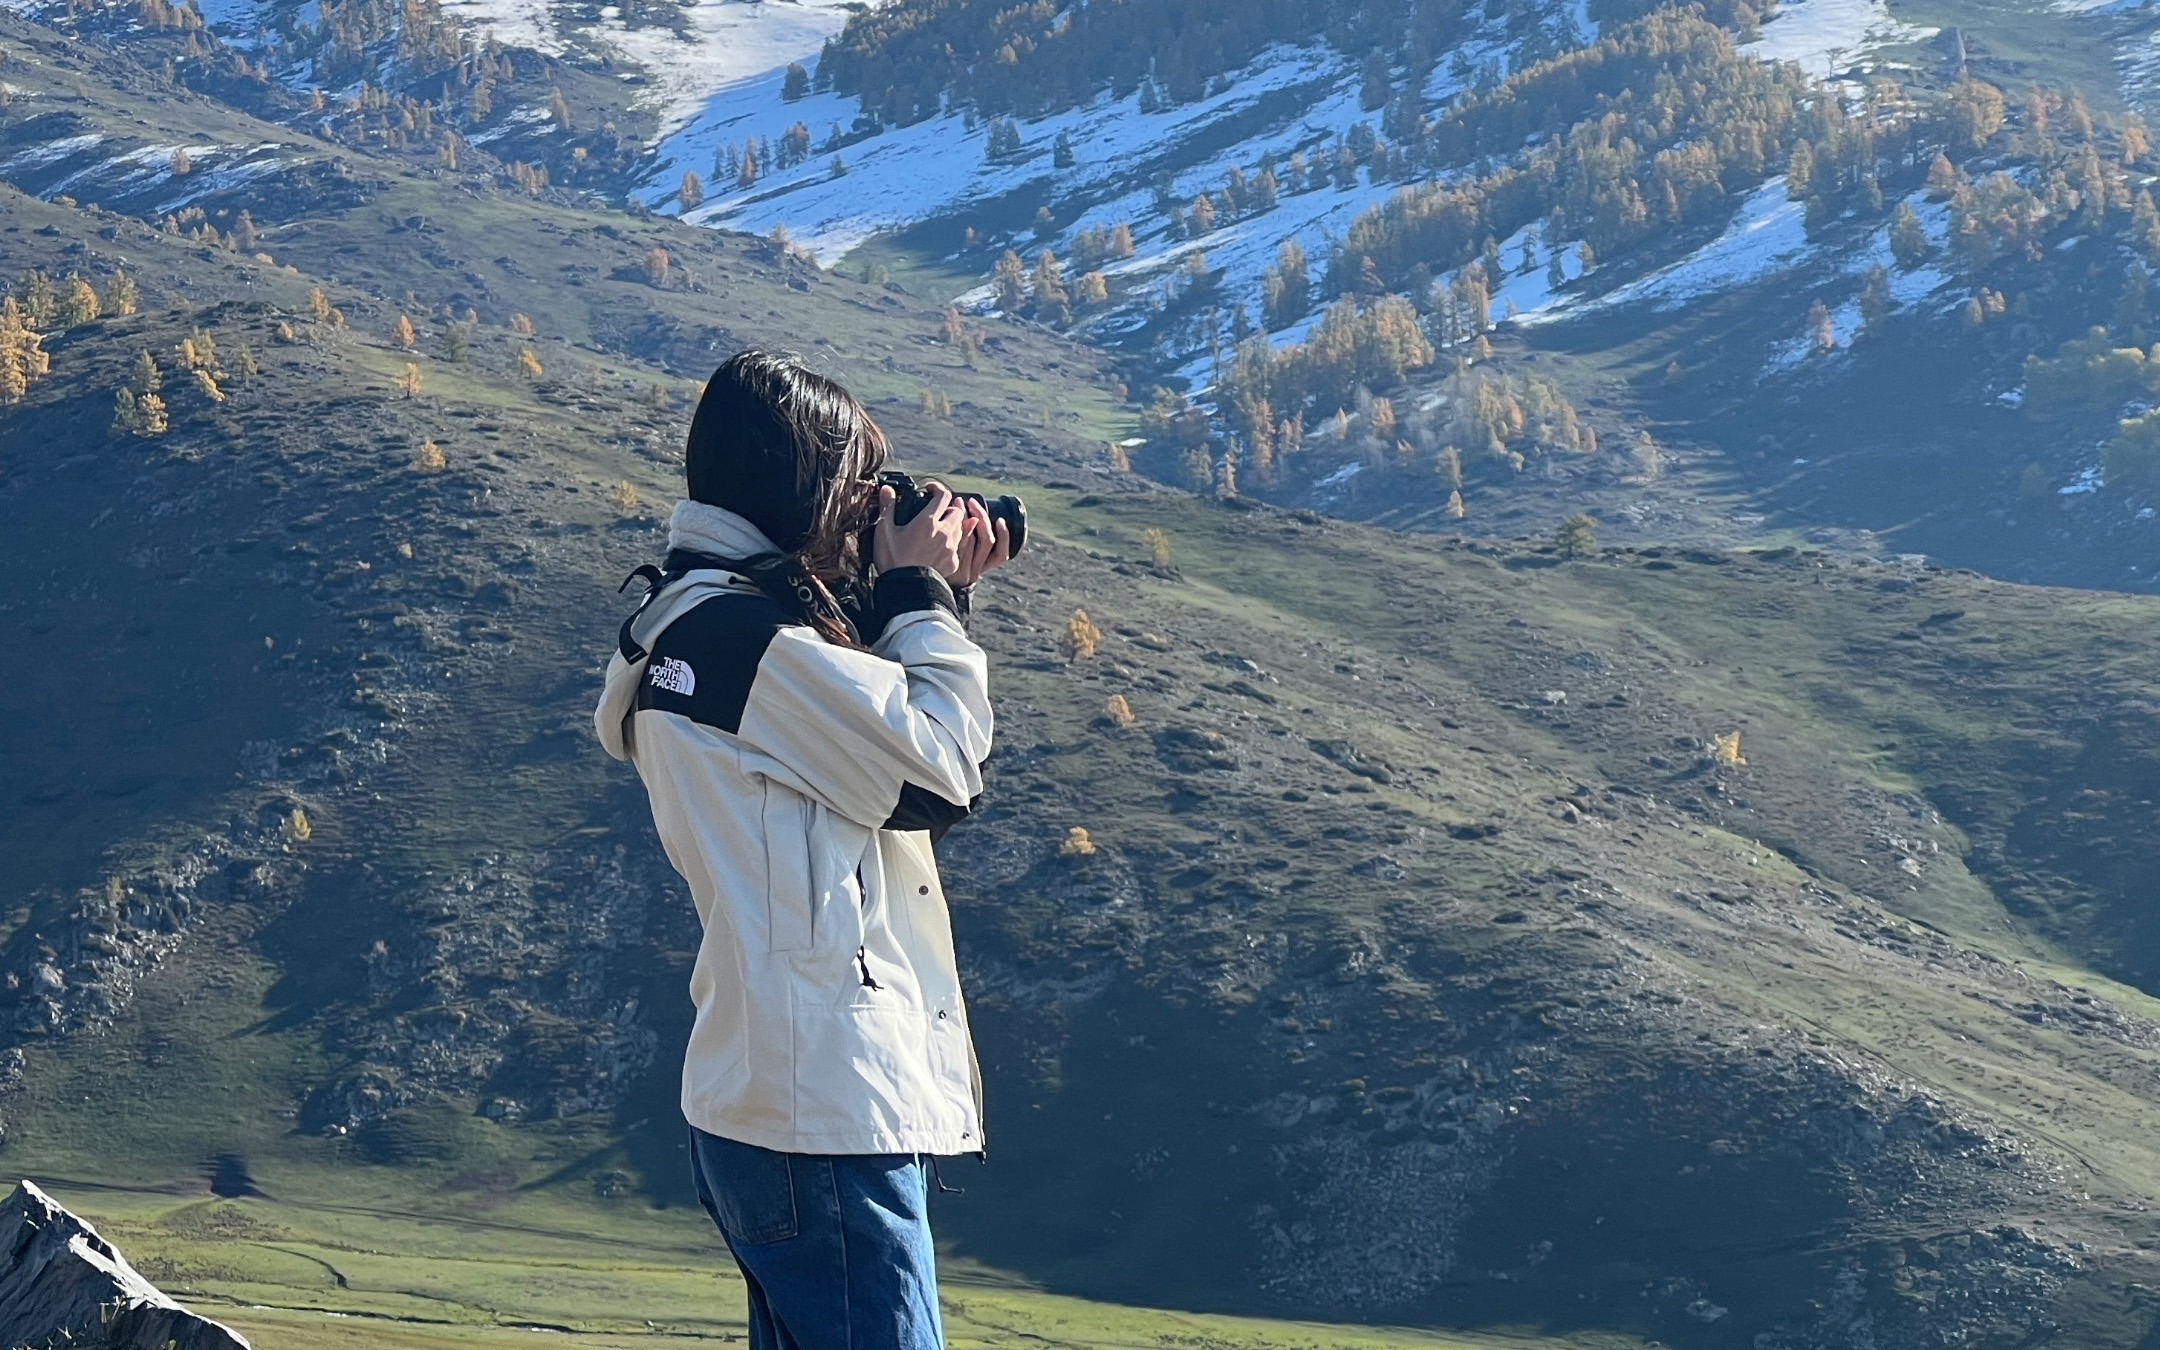 【摄影合集】新疆旅游小记 还有一些我用相机记录下的瞬间